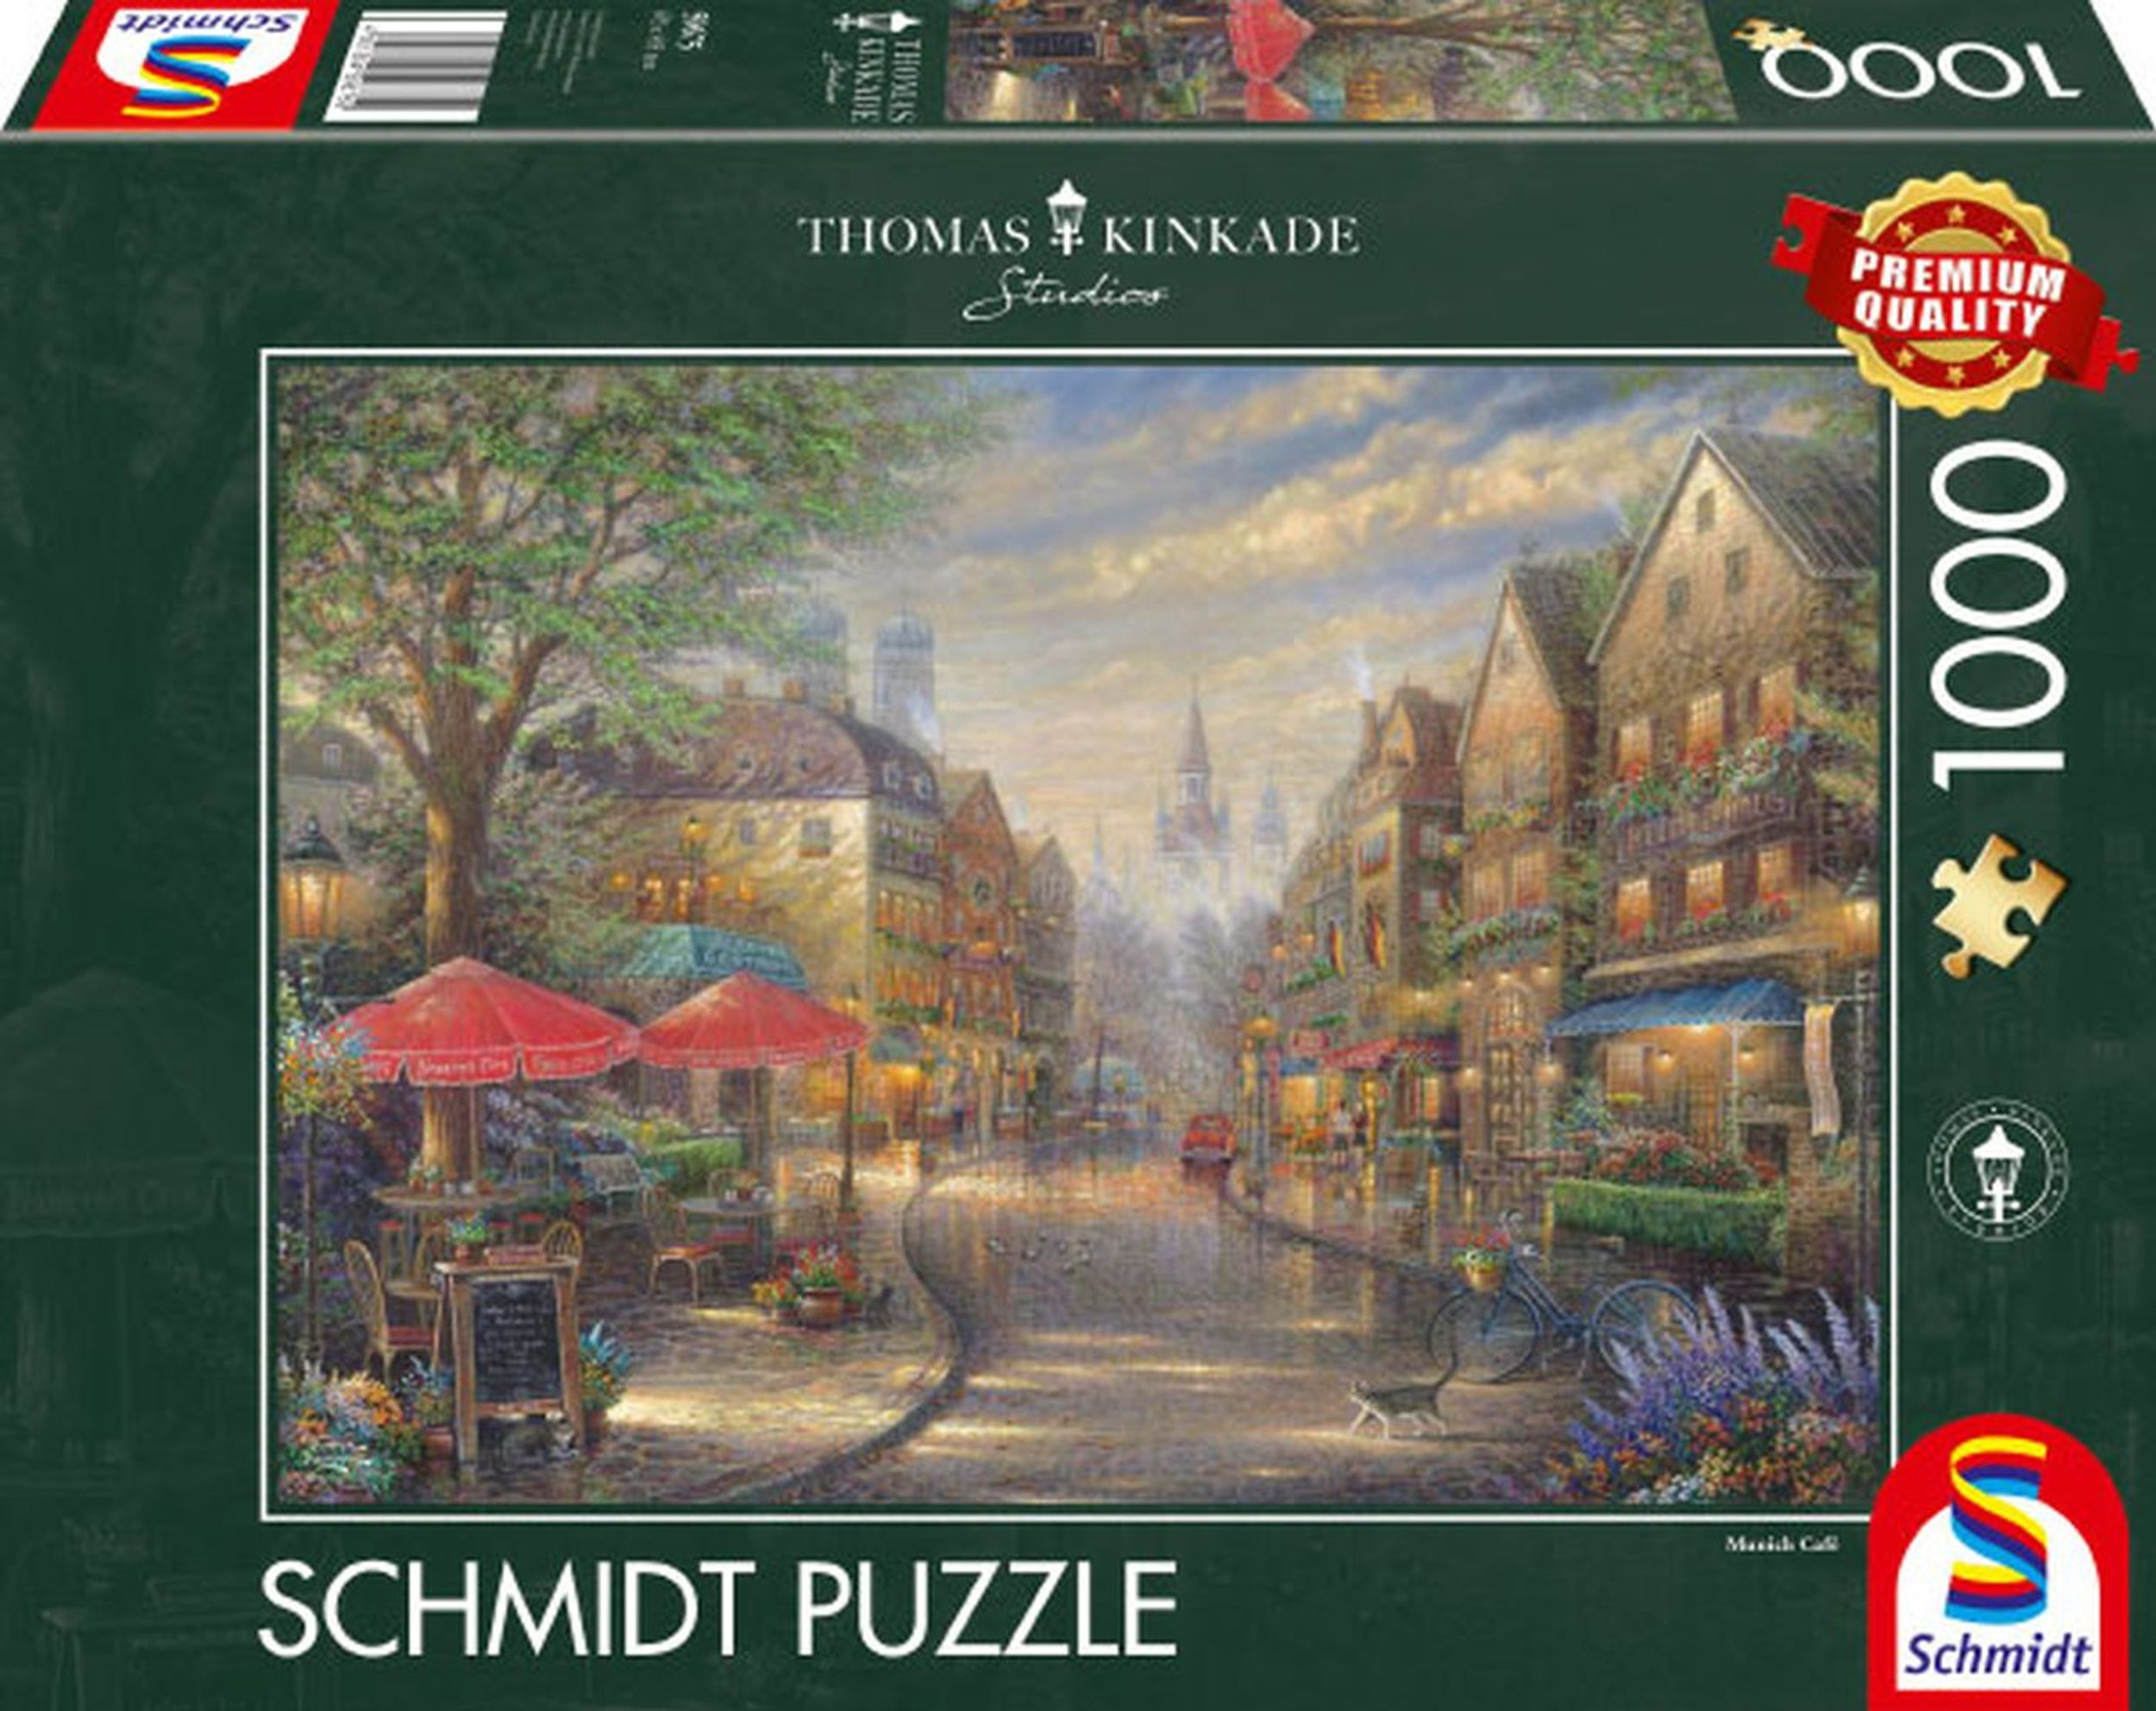 SCHMIDT in München Puzzle SPIELE Café